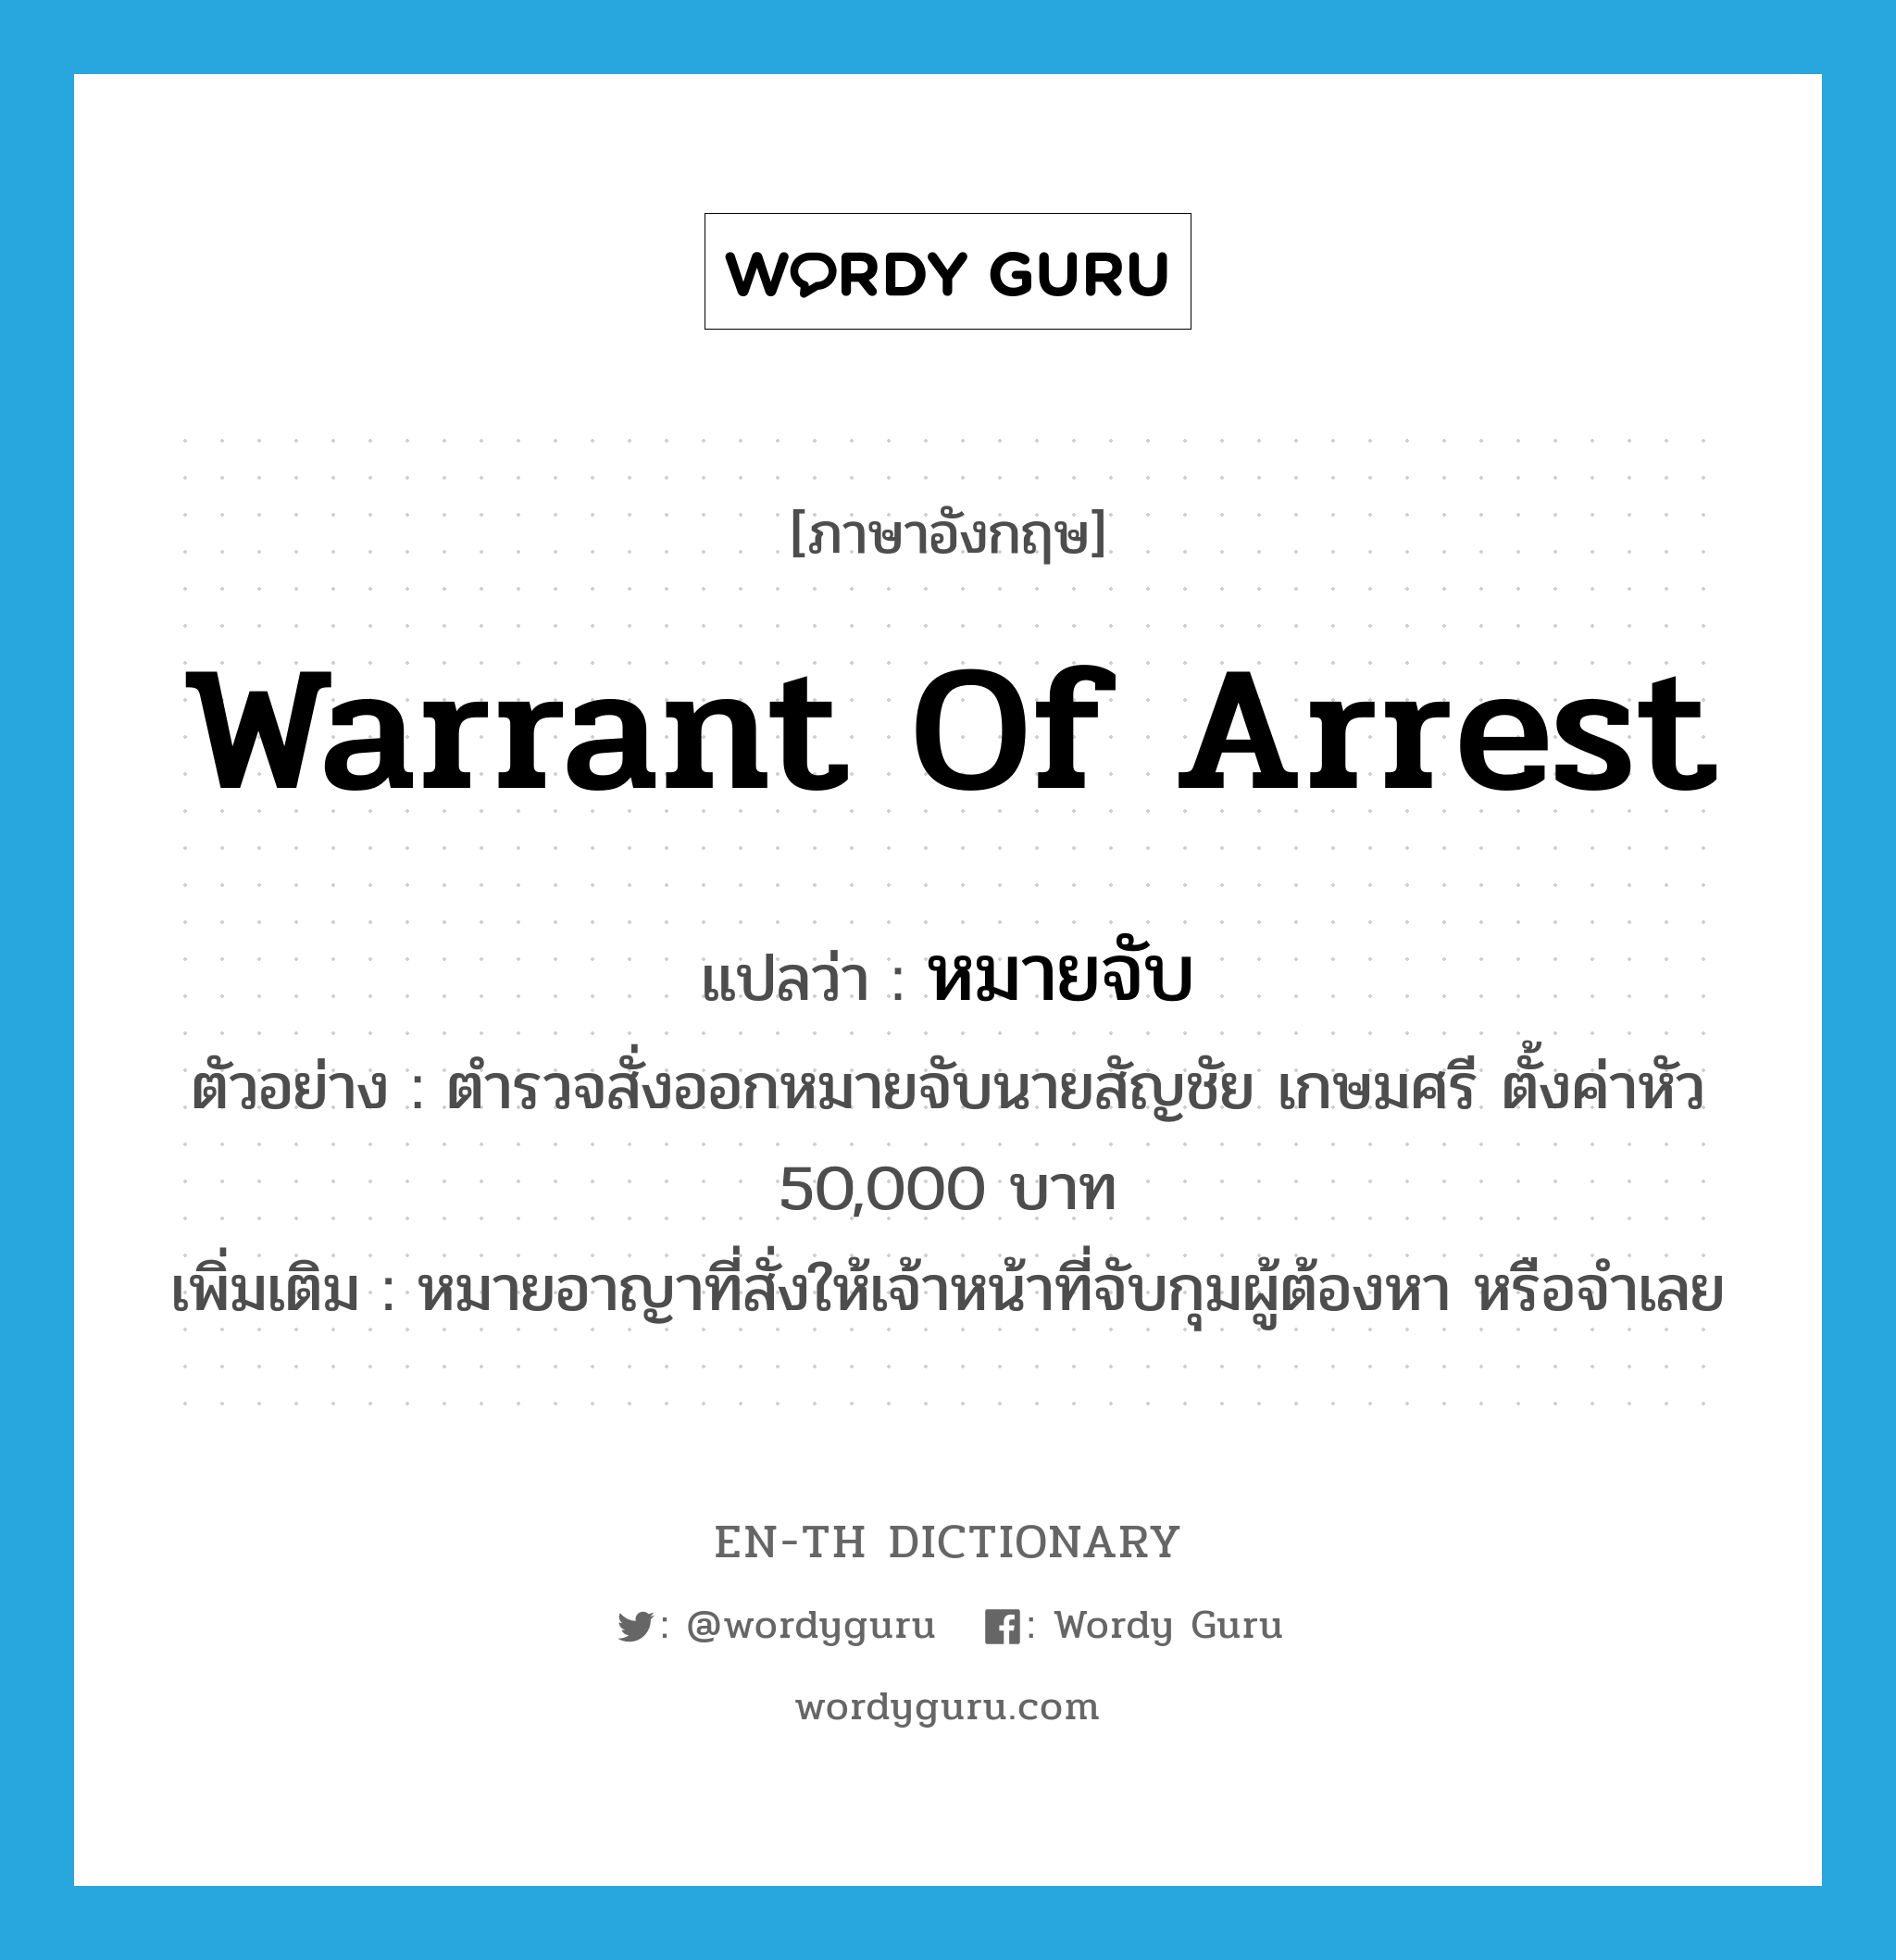 หมายจับ ภาษาอังกฤษ?, คำศัพท์ภาษาอังกฤษ หมายจับ แปลว่า warrant of arrest ประเภท N ตัวอย่าง ตำรวจสั่งออกหมายจับนายสัญชัย เกษมศรี ตั้งค่าหัว 50,000 บาท เพิ่มเติม หมายอาญาที่สั่งให้เจ้าหน้าที่จับกุมผู้ต้องหา หรือจำเลย หมวด N